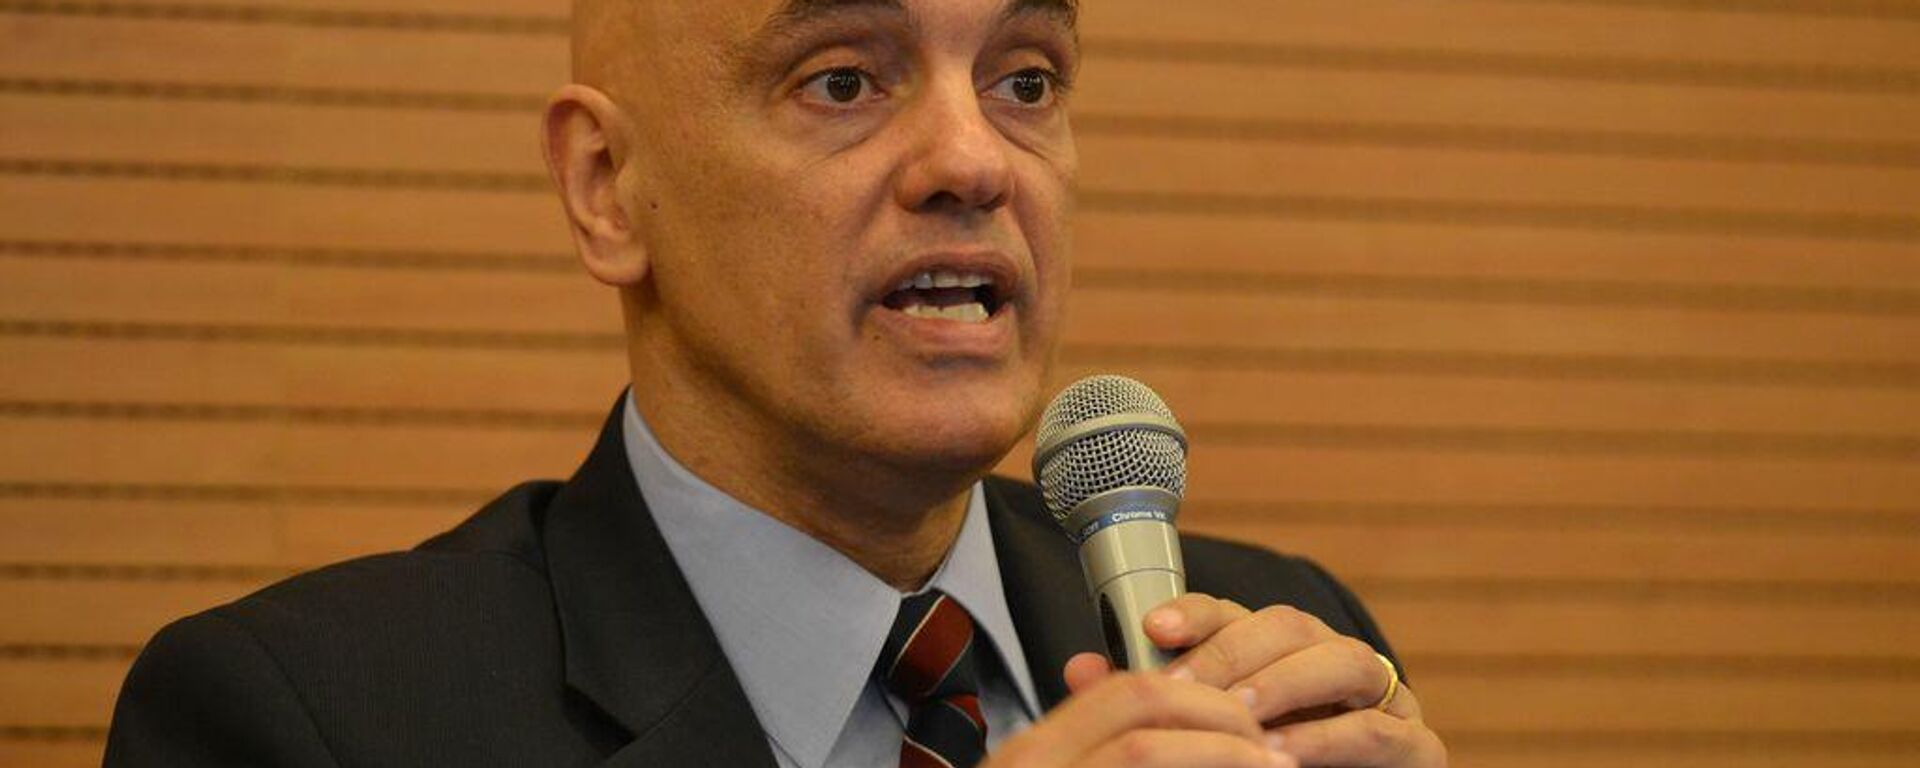 O ministro do STF, Alexandre de Moraes, participa de encontro em comemoração aos 30 anos da Constituição Federal, na Faculdade de Direito da USP, em 5 de outubro de 2018 - Sputnik Brasil, 1920, 03.12.2021